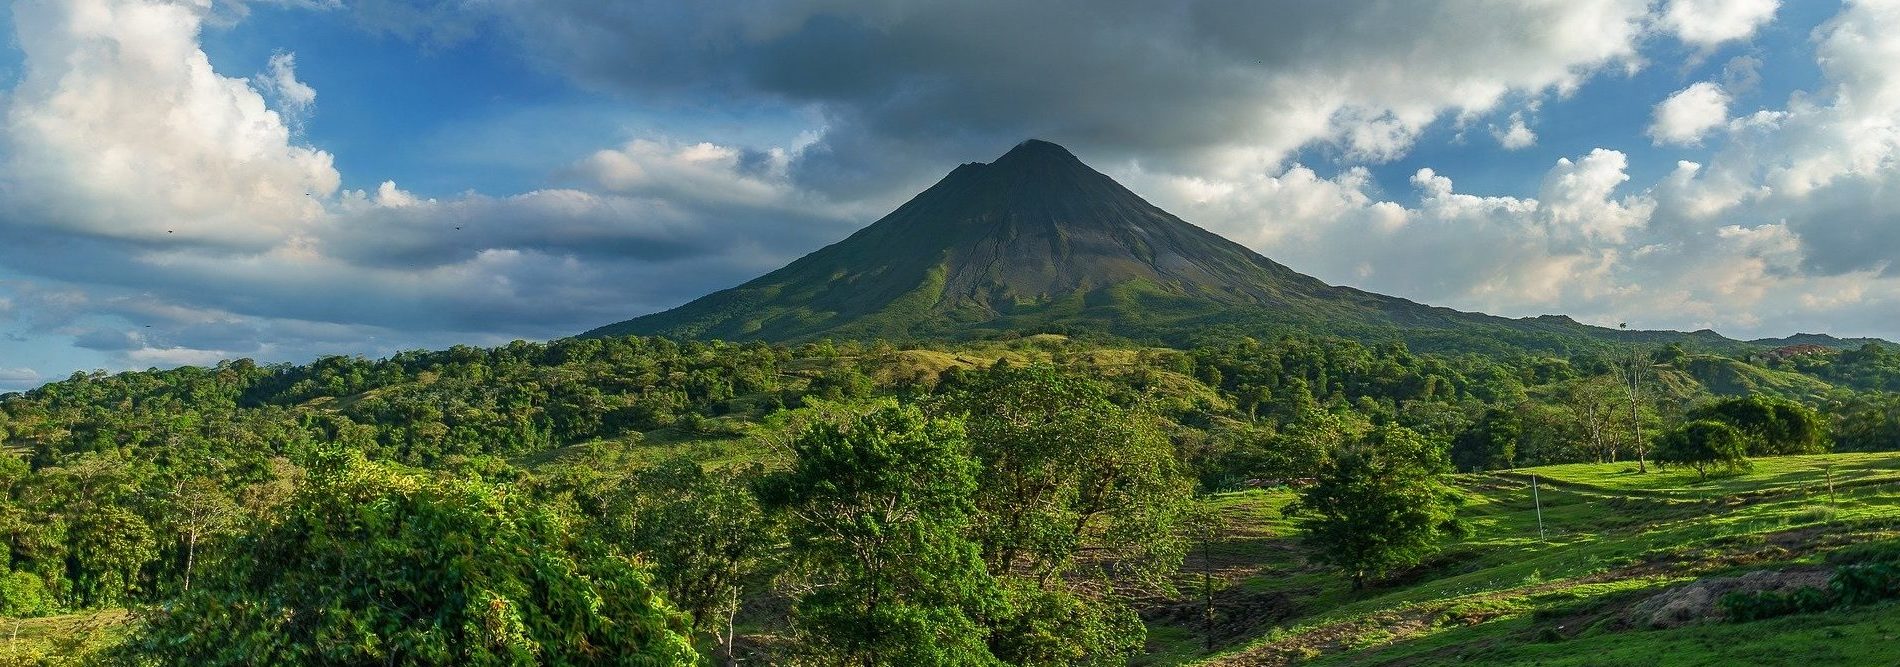 Ein Vulkan in der Destination Sarchí, Costa Rica.